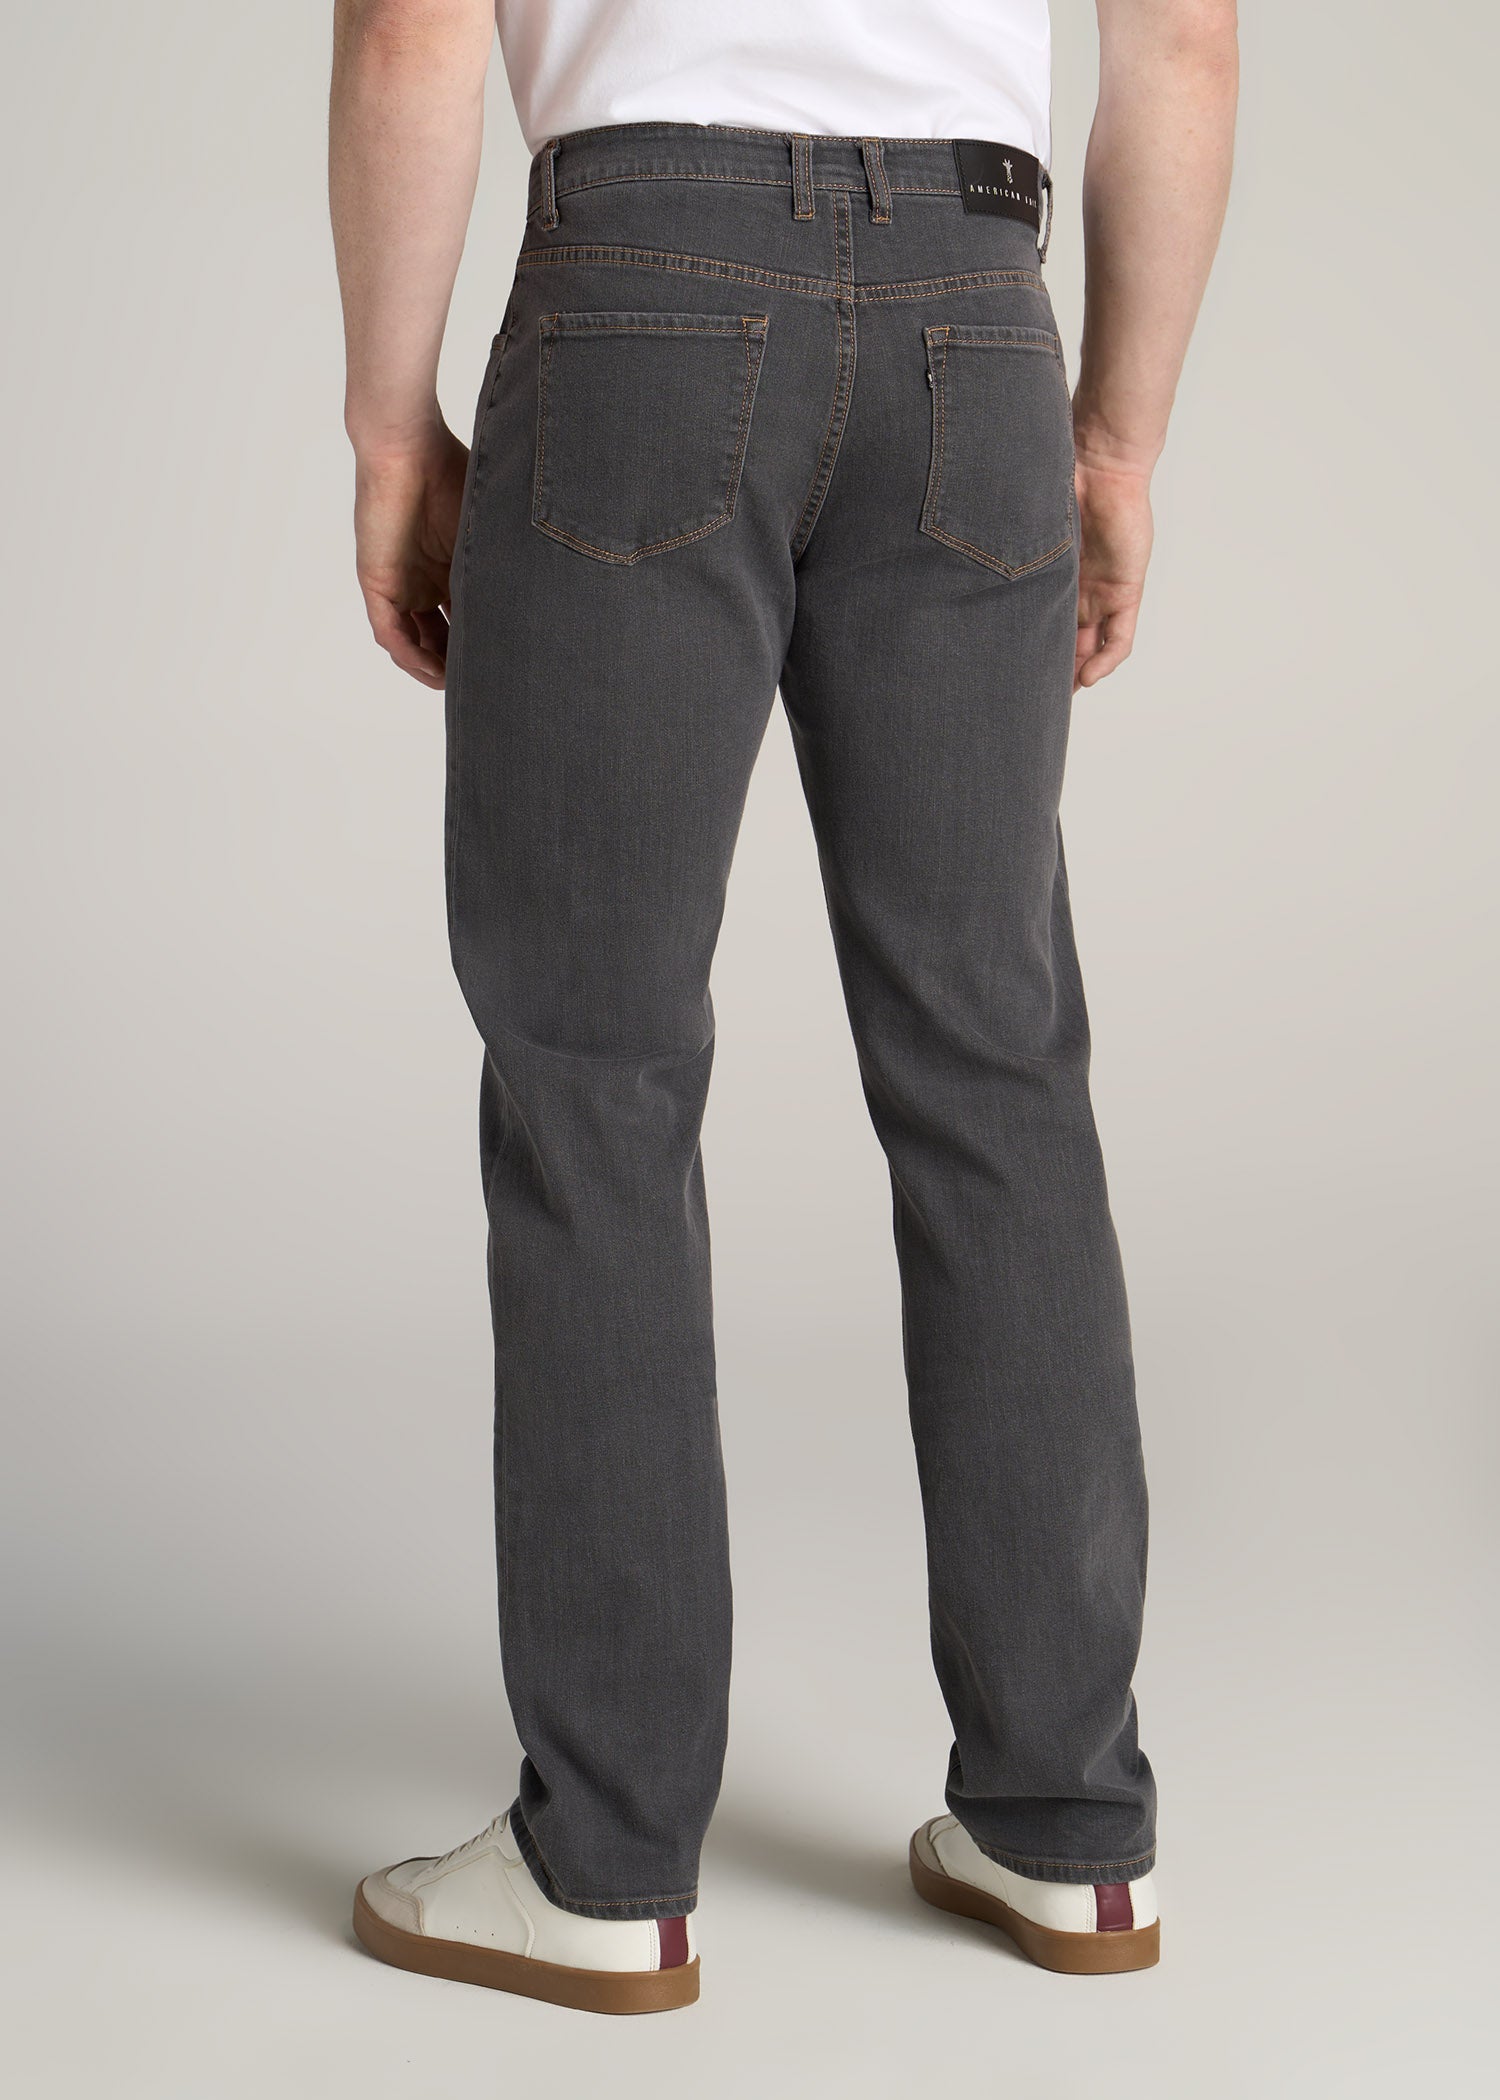 Grey Denim J1 Straight Leg Tall Men's Jeans | American Tall